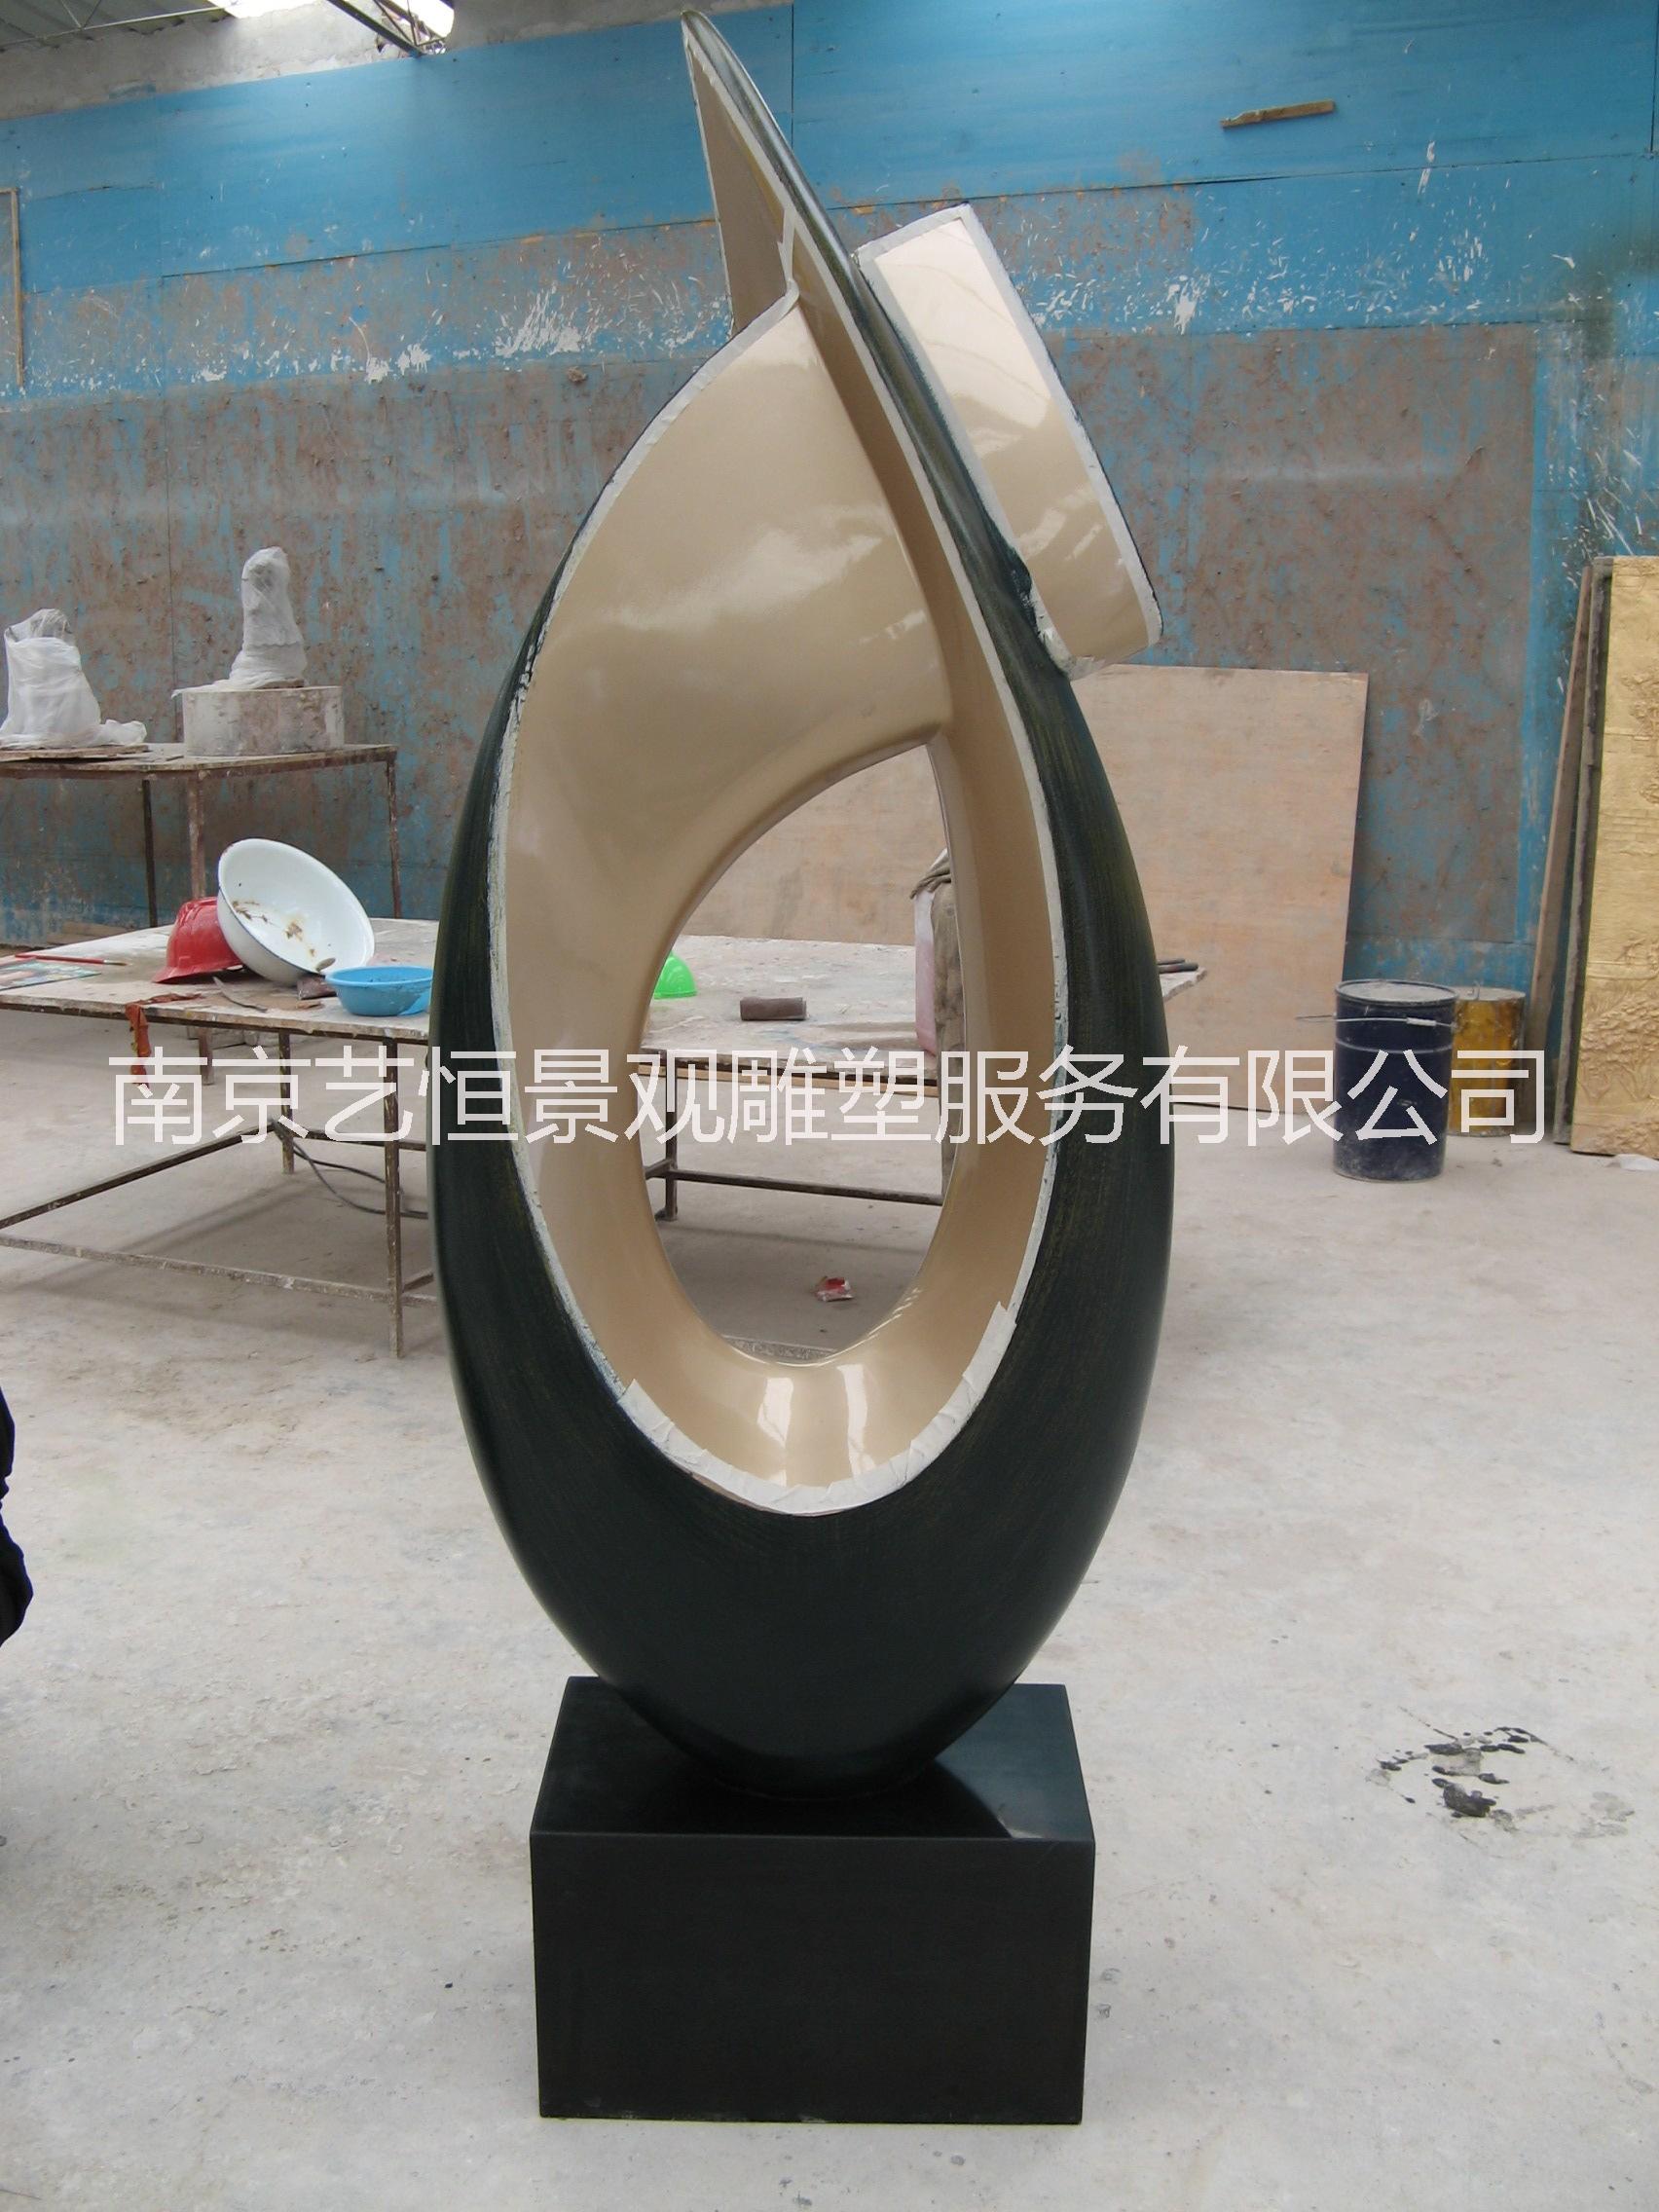 南京市抽象雕塑厂家南京雕塑厂制作抽象雕塑 校园雕塑 玻璃钢雕塑 城市雕塑 水泥雕塑